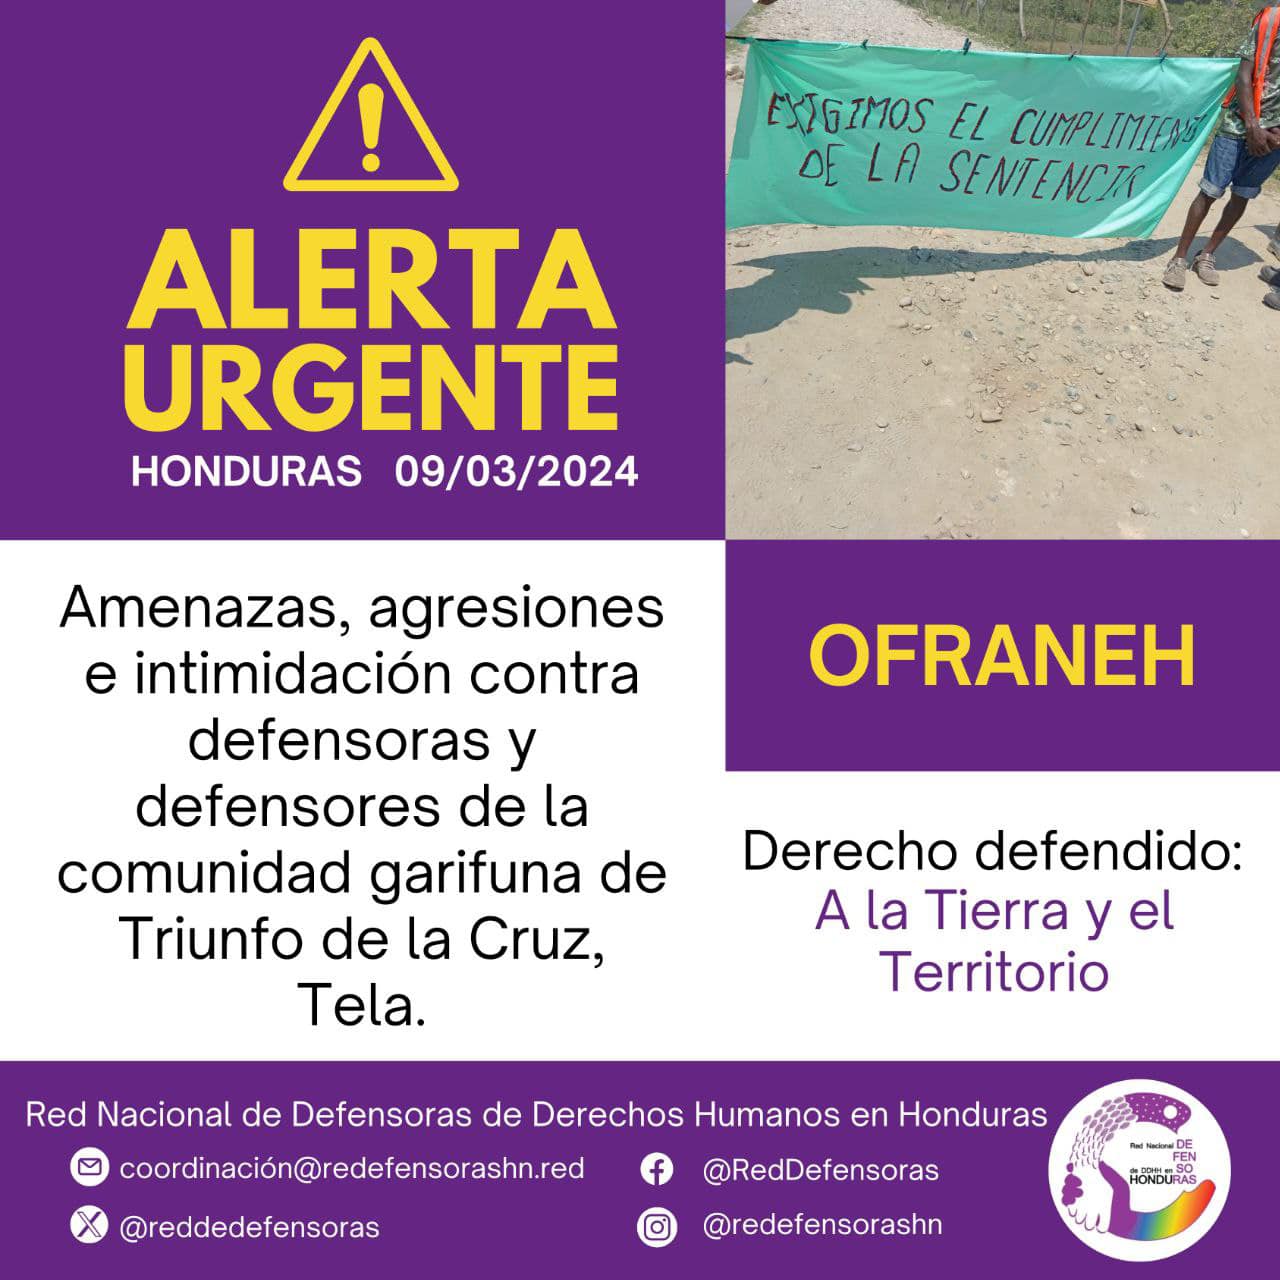 #AlertaUrgente│Amenazas, agresiones e intimidación contra defensoras y defensores de Triunfo de la Cruz, Tela